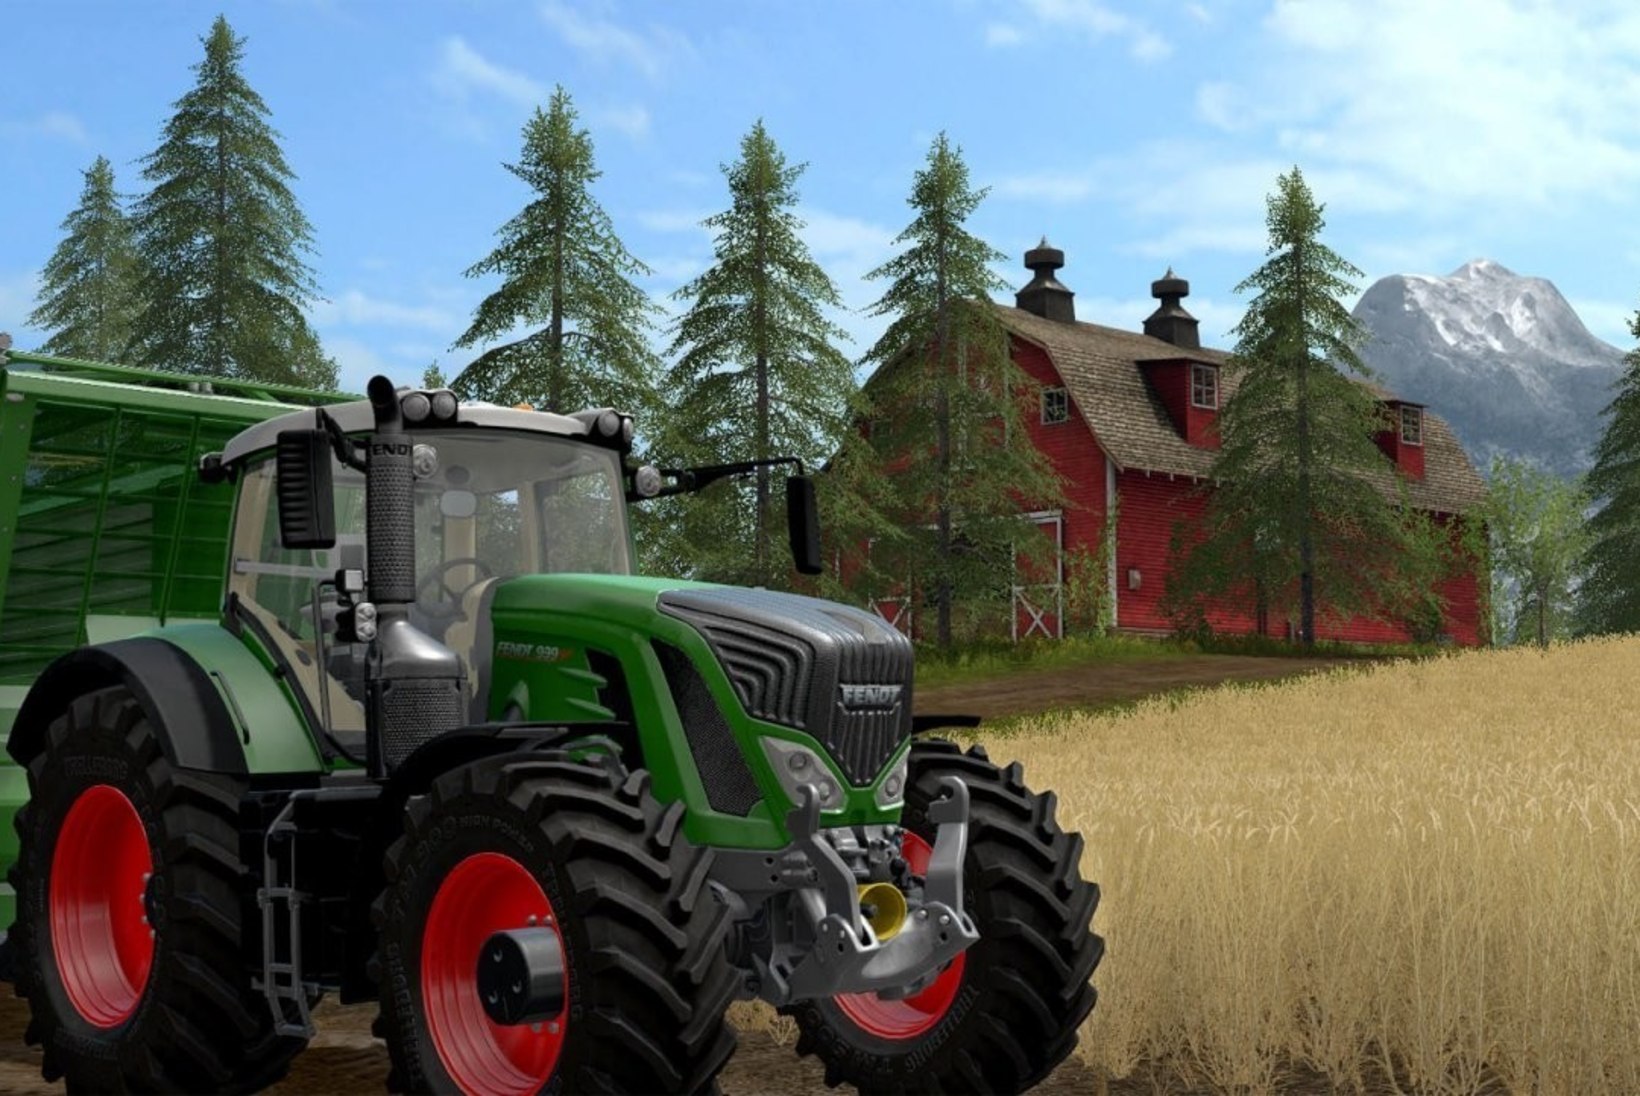 PÕLLUMEES, PÕLINE RIKAS! „Farming Simulator 19“ lubab enamat, kui kunagi varem!